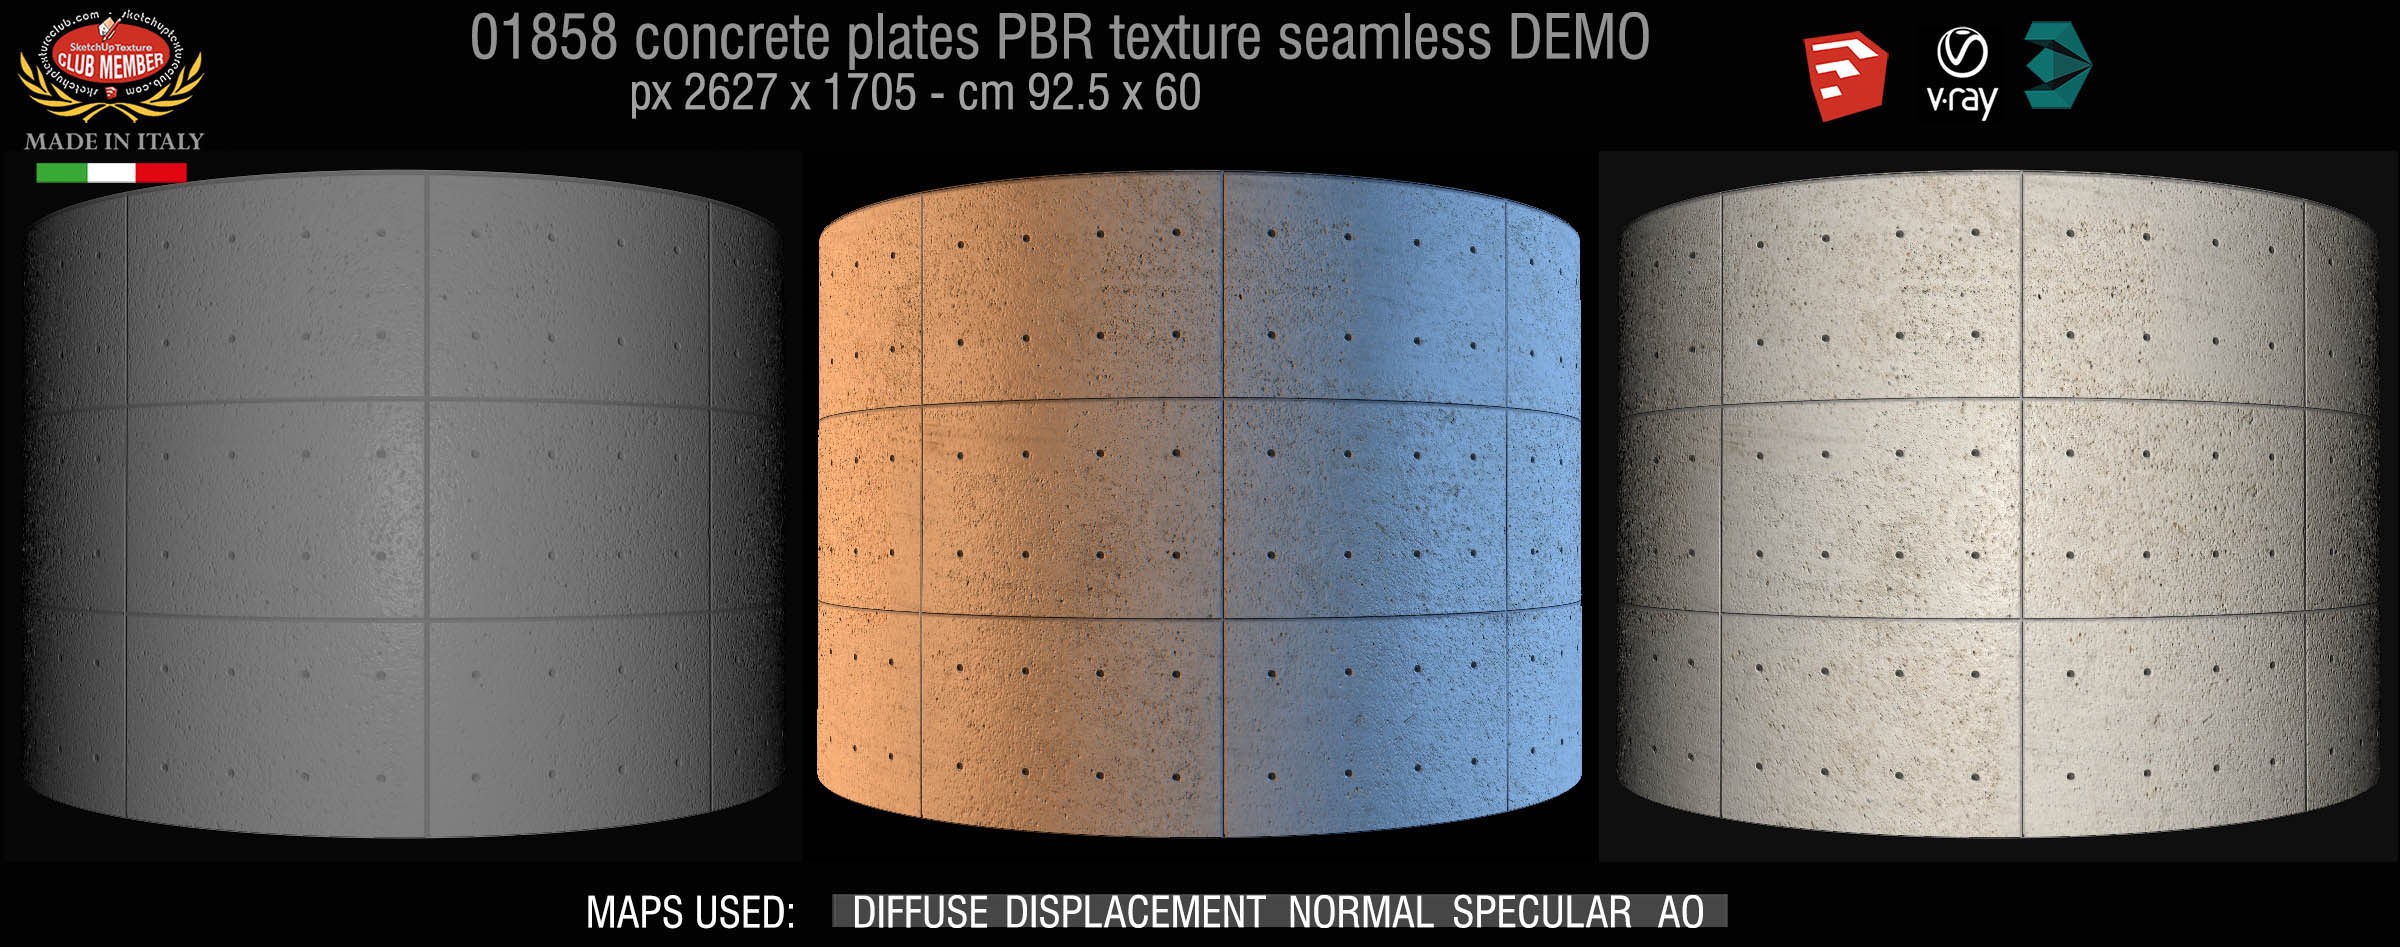 01858 Tadao Ando concrete plates PBR texture seamless DEMO